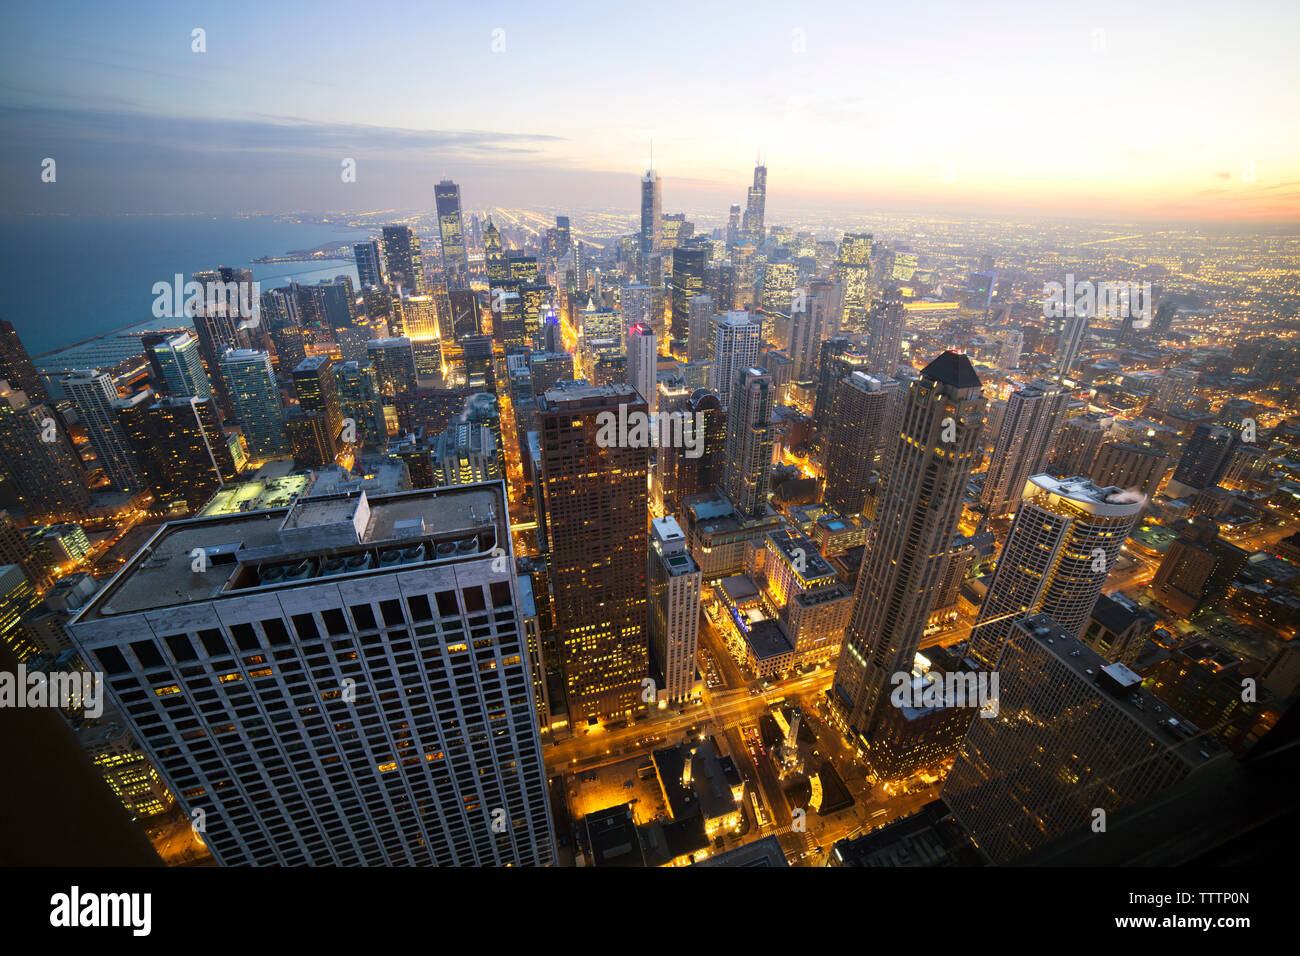 Vue aérienne de la ville illuminée pendant le coucher du soleil Banque D'Images